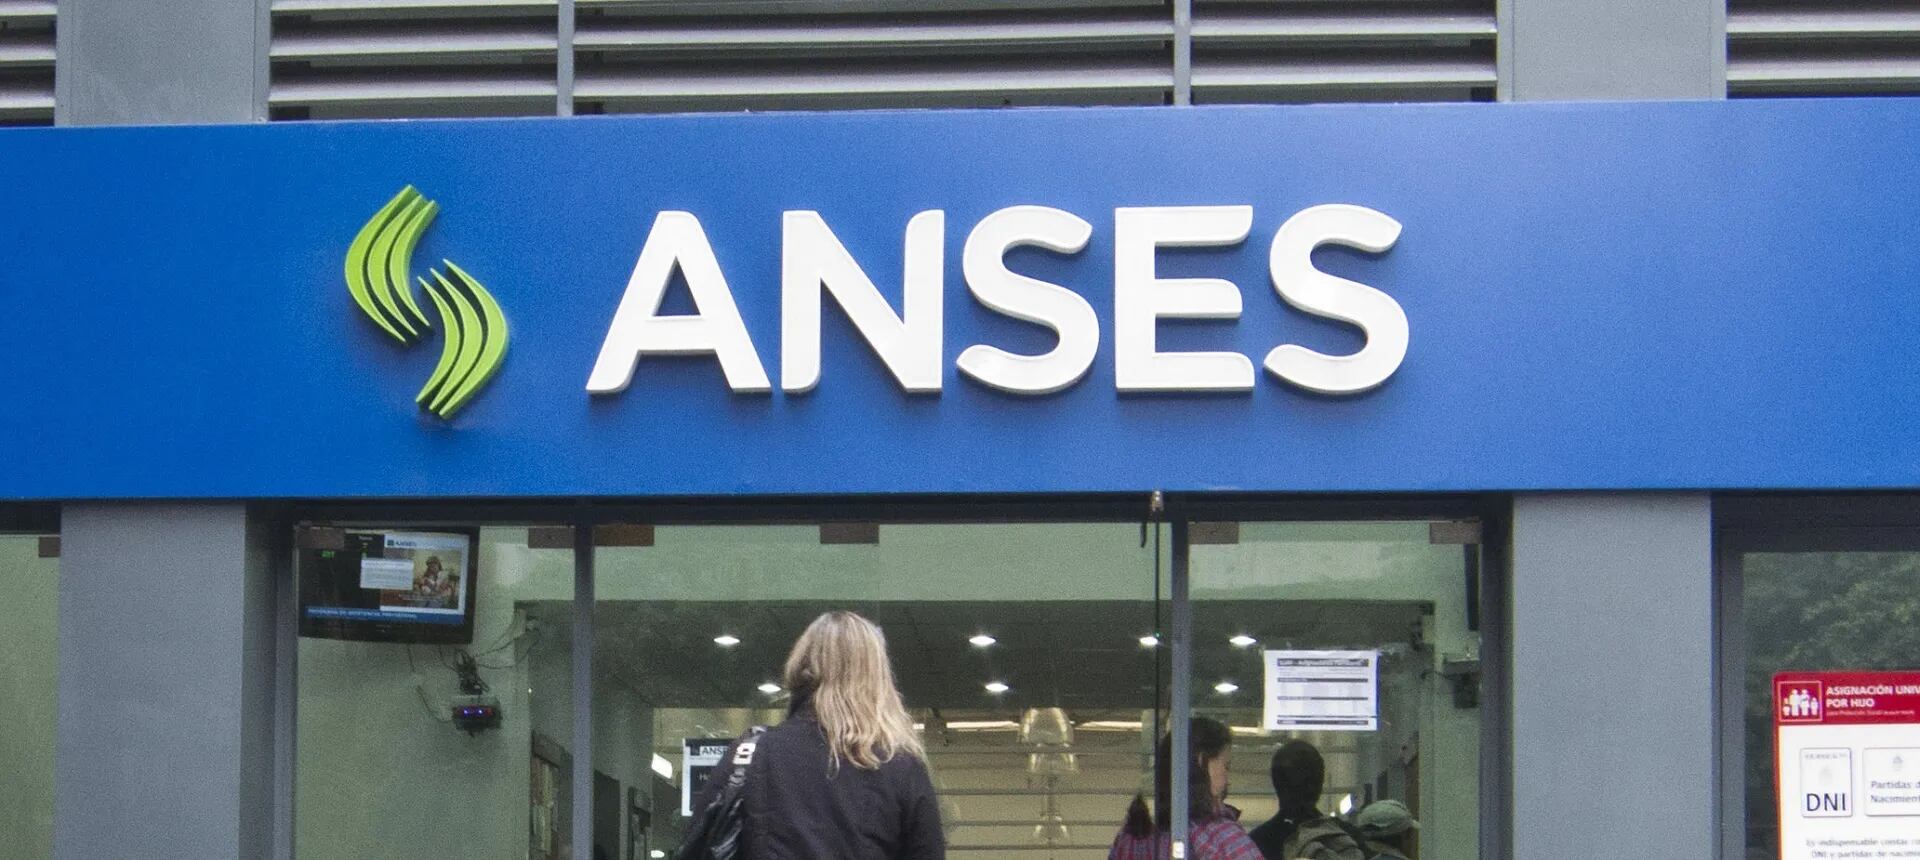 Seis provincias le reclaman a la ANSES por incumplimiento en la transferencia de fondos previsionales